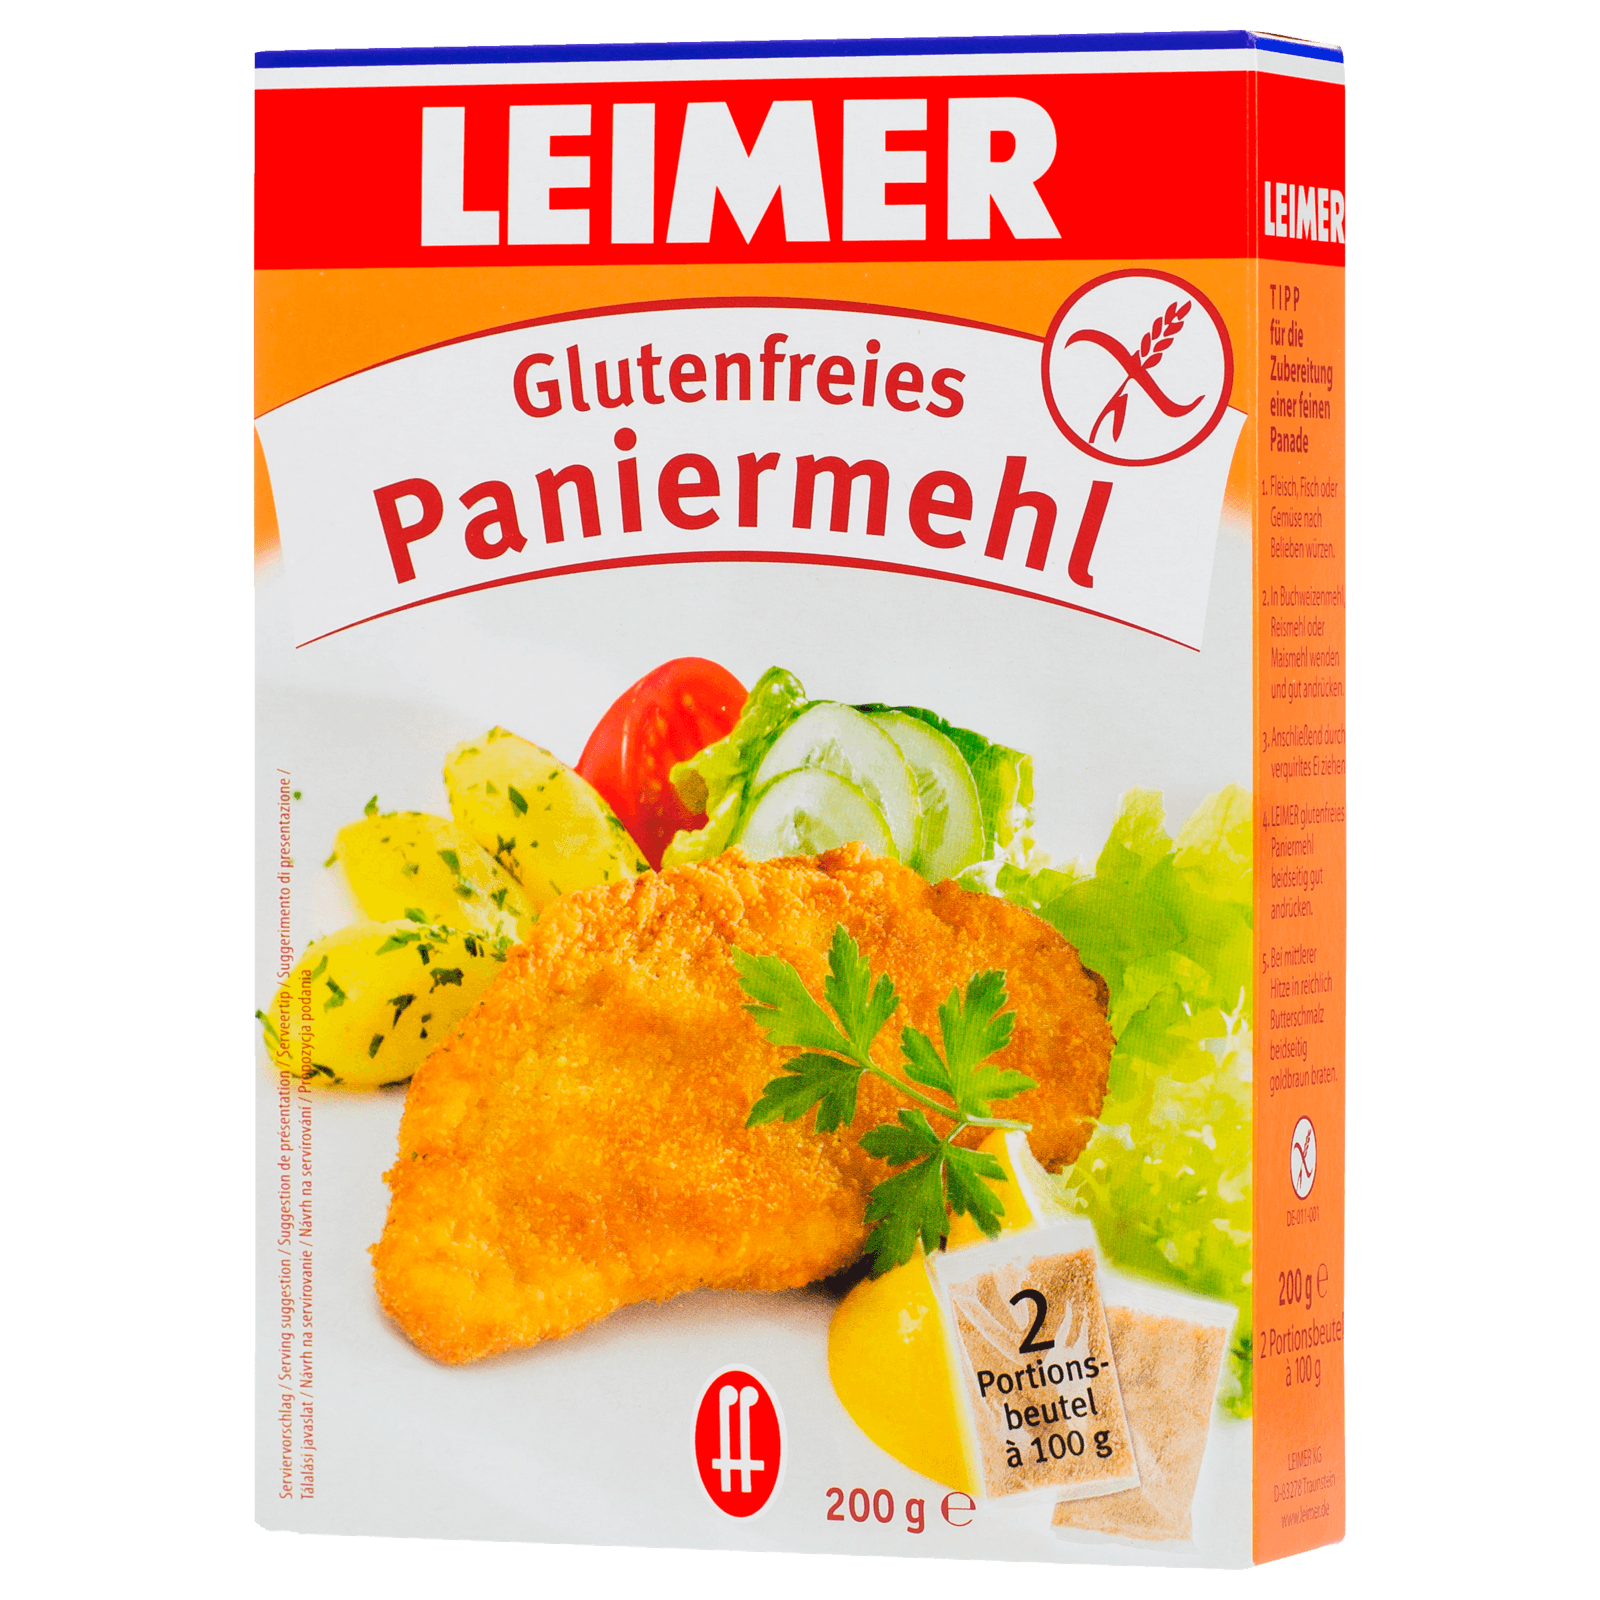 Leimer Paniermehl glutenfrei 200g